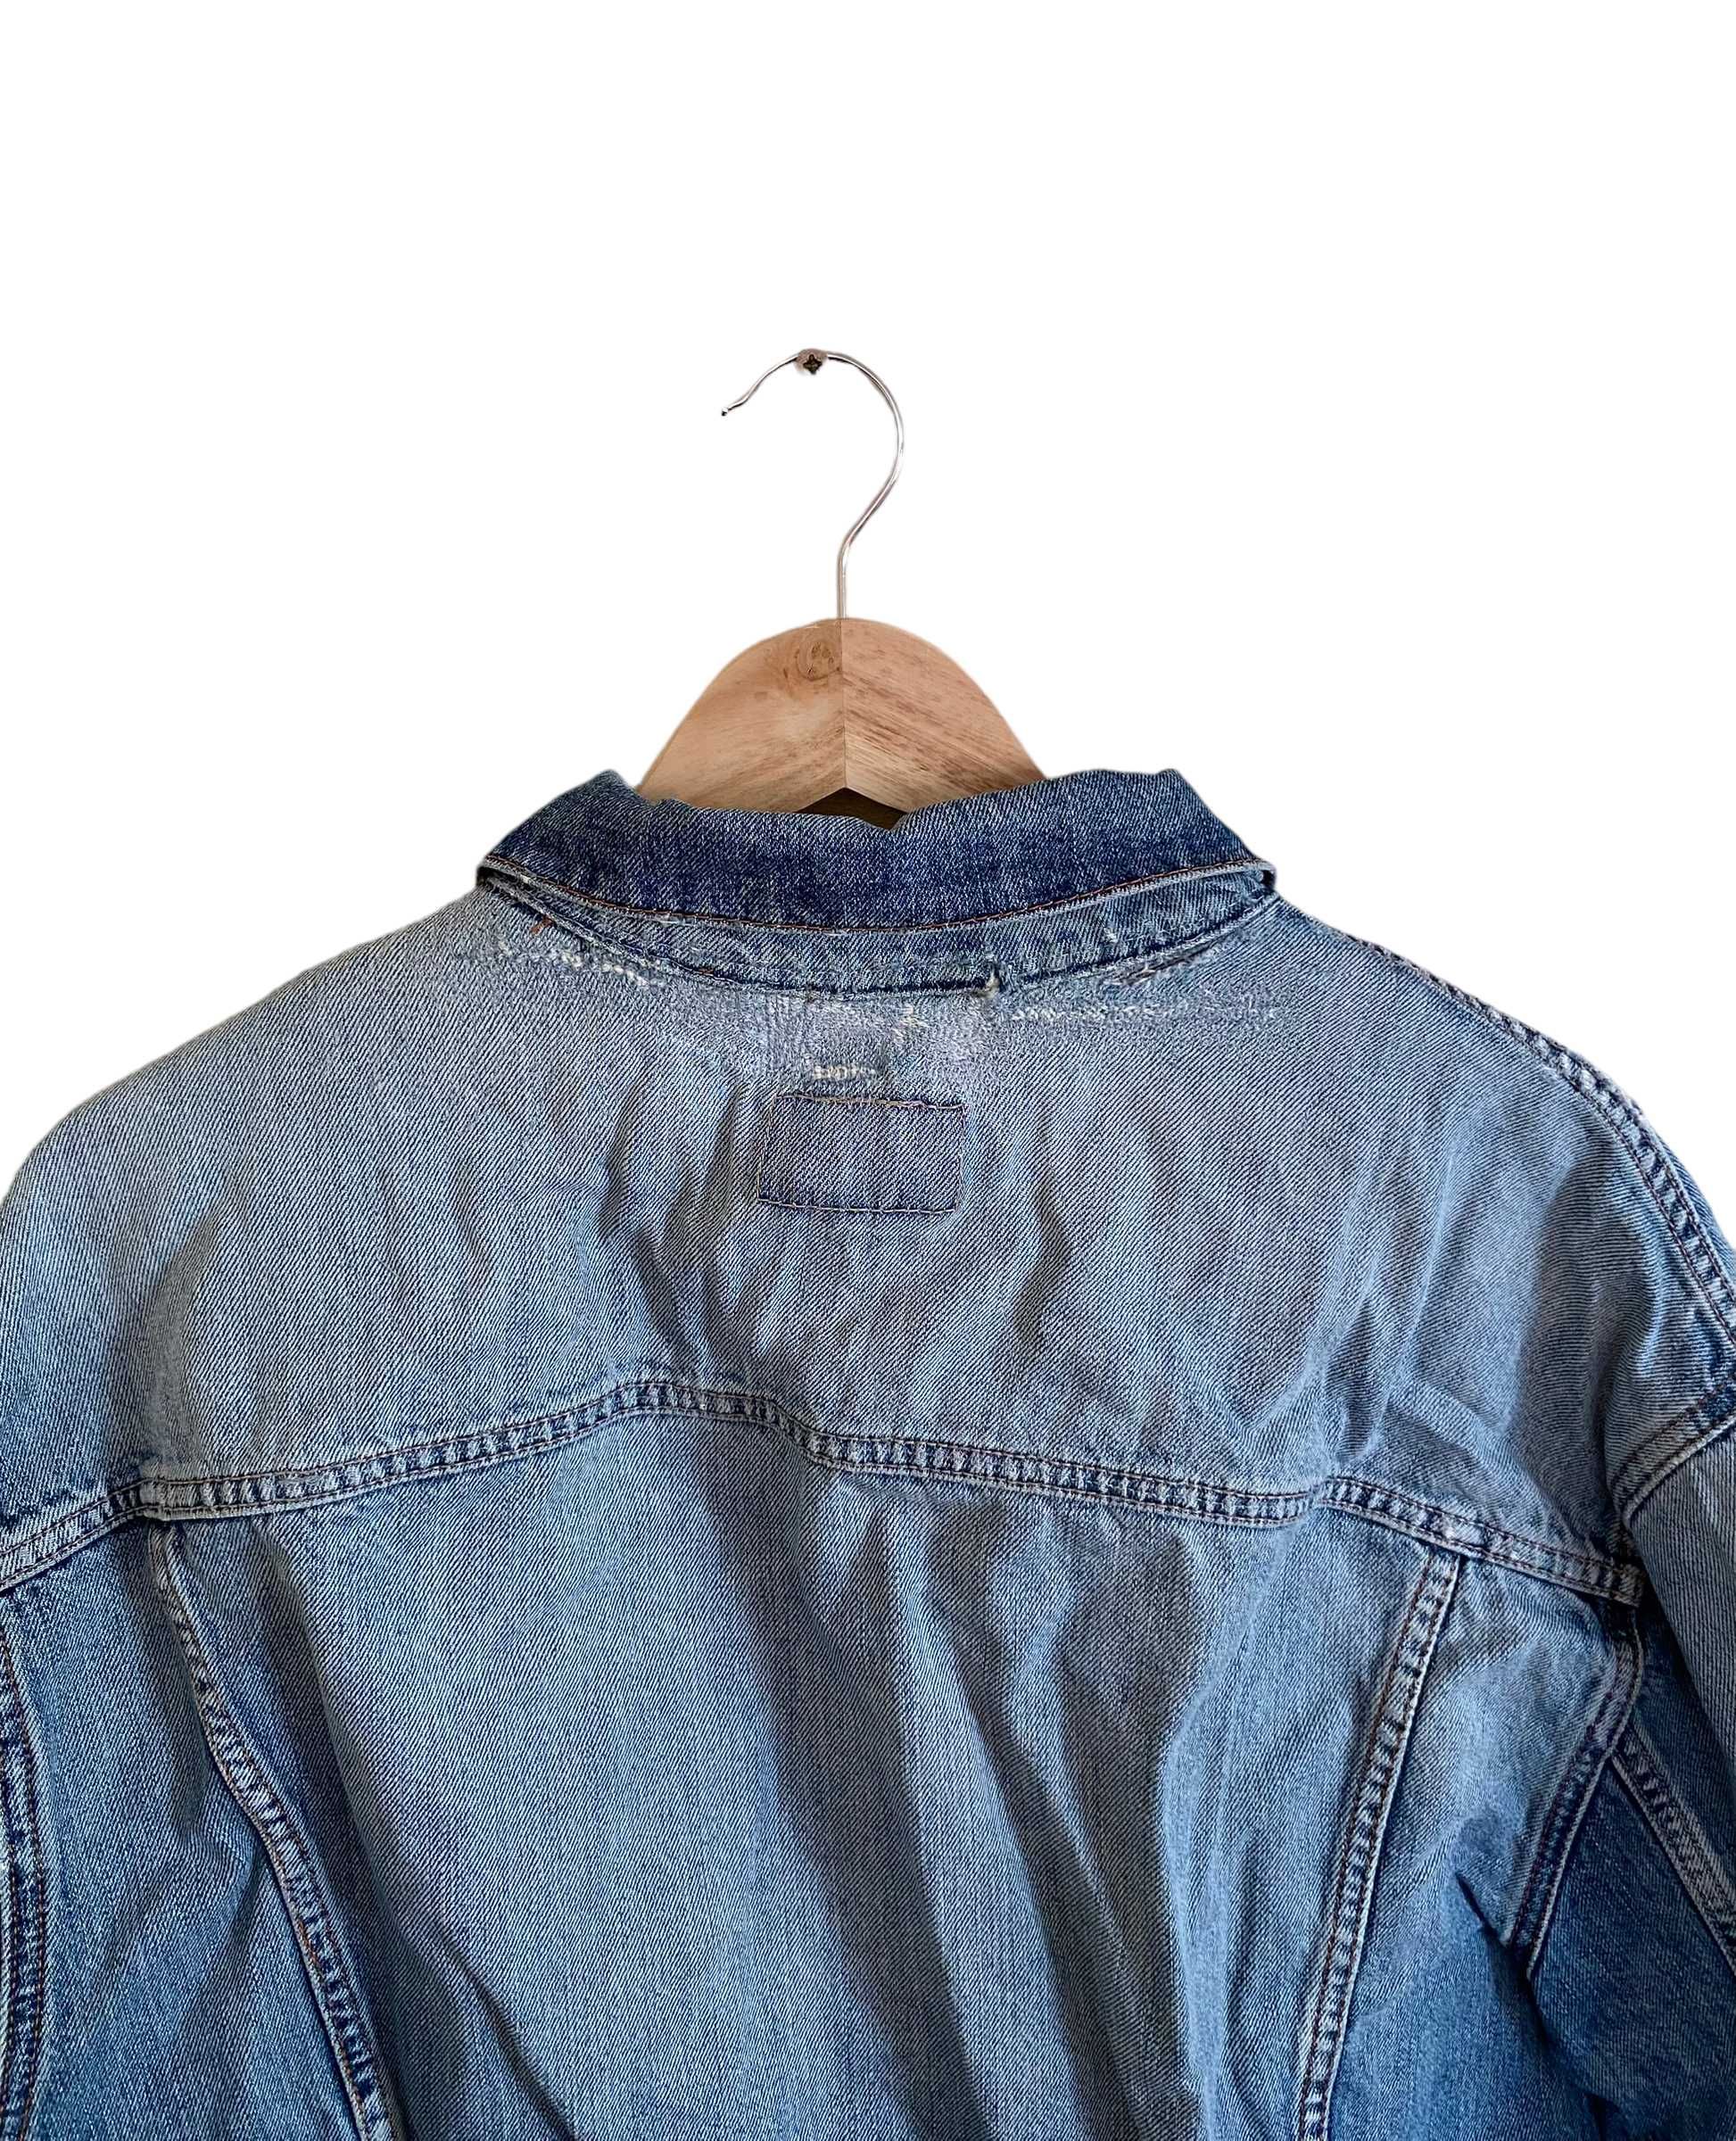 Levi's kurtka jeansowa, trucker jacket, rozmiar XXL, stan bardzo dobry